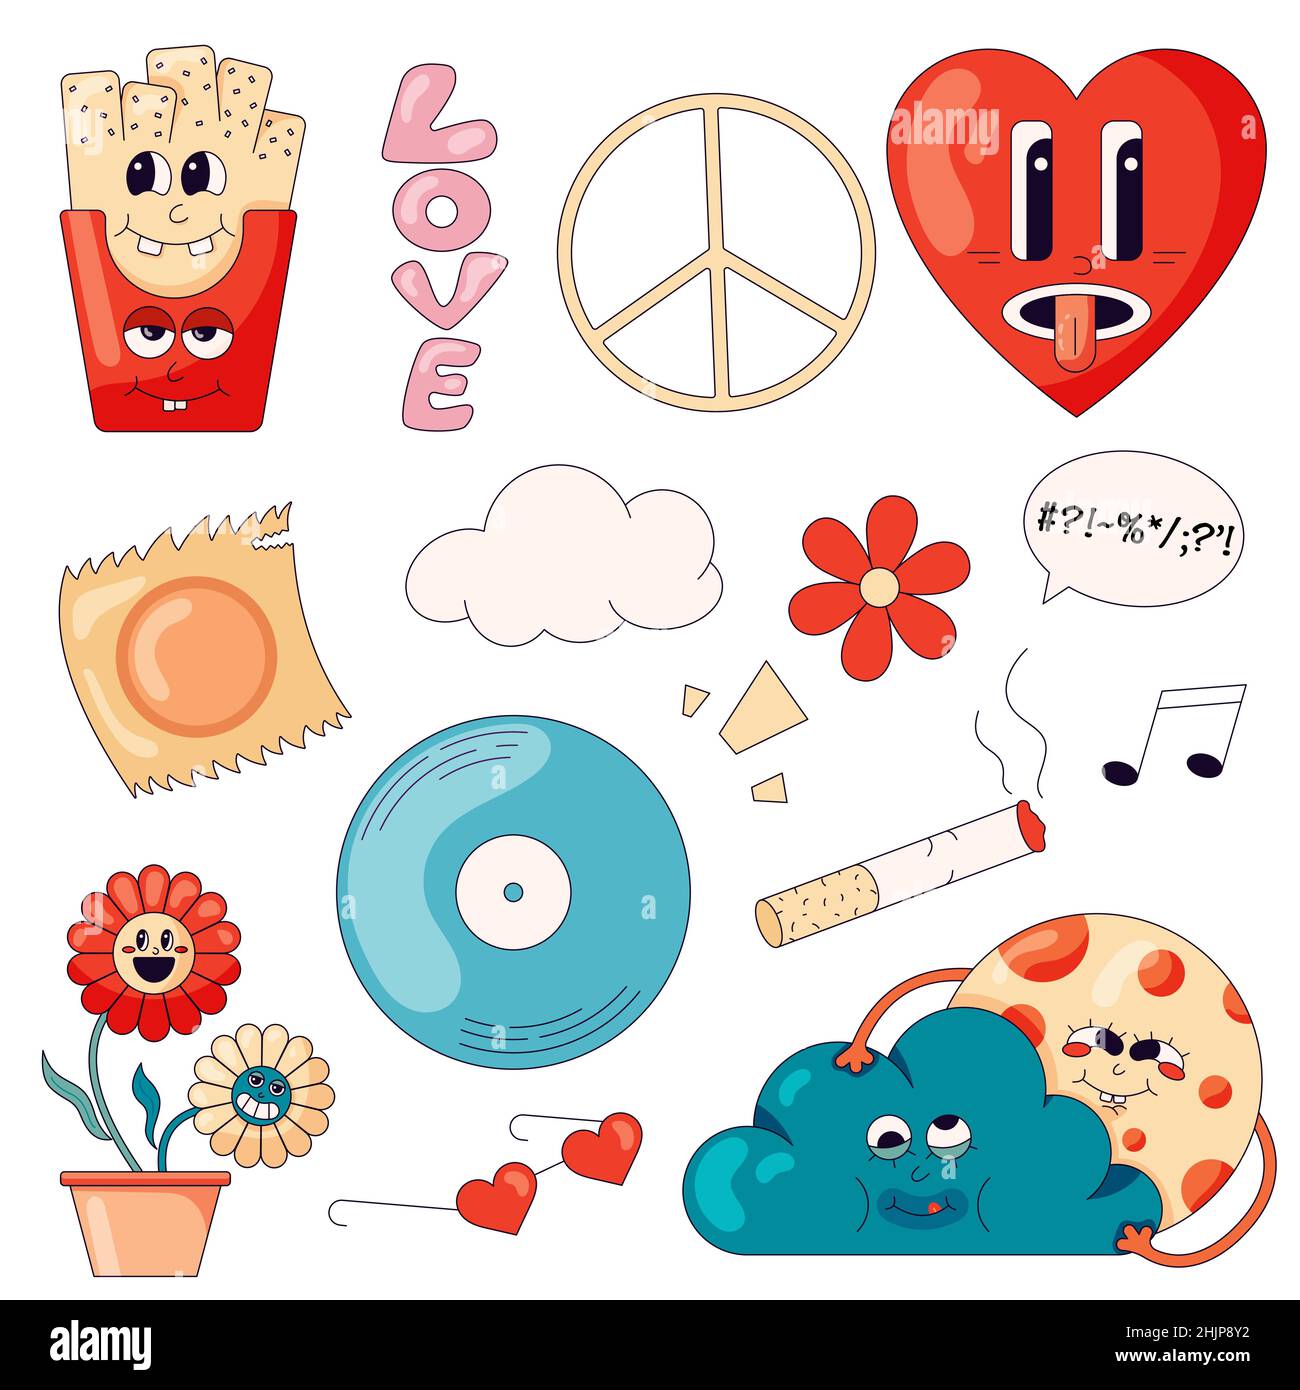 Ein Set von Hippie-Sticker mit Pommes Frites, Blumen, einem pazifik-Symbol und anderen Elementen des 70s im Cartoon-Stil Stock Vektor